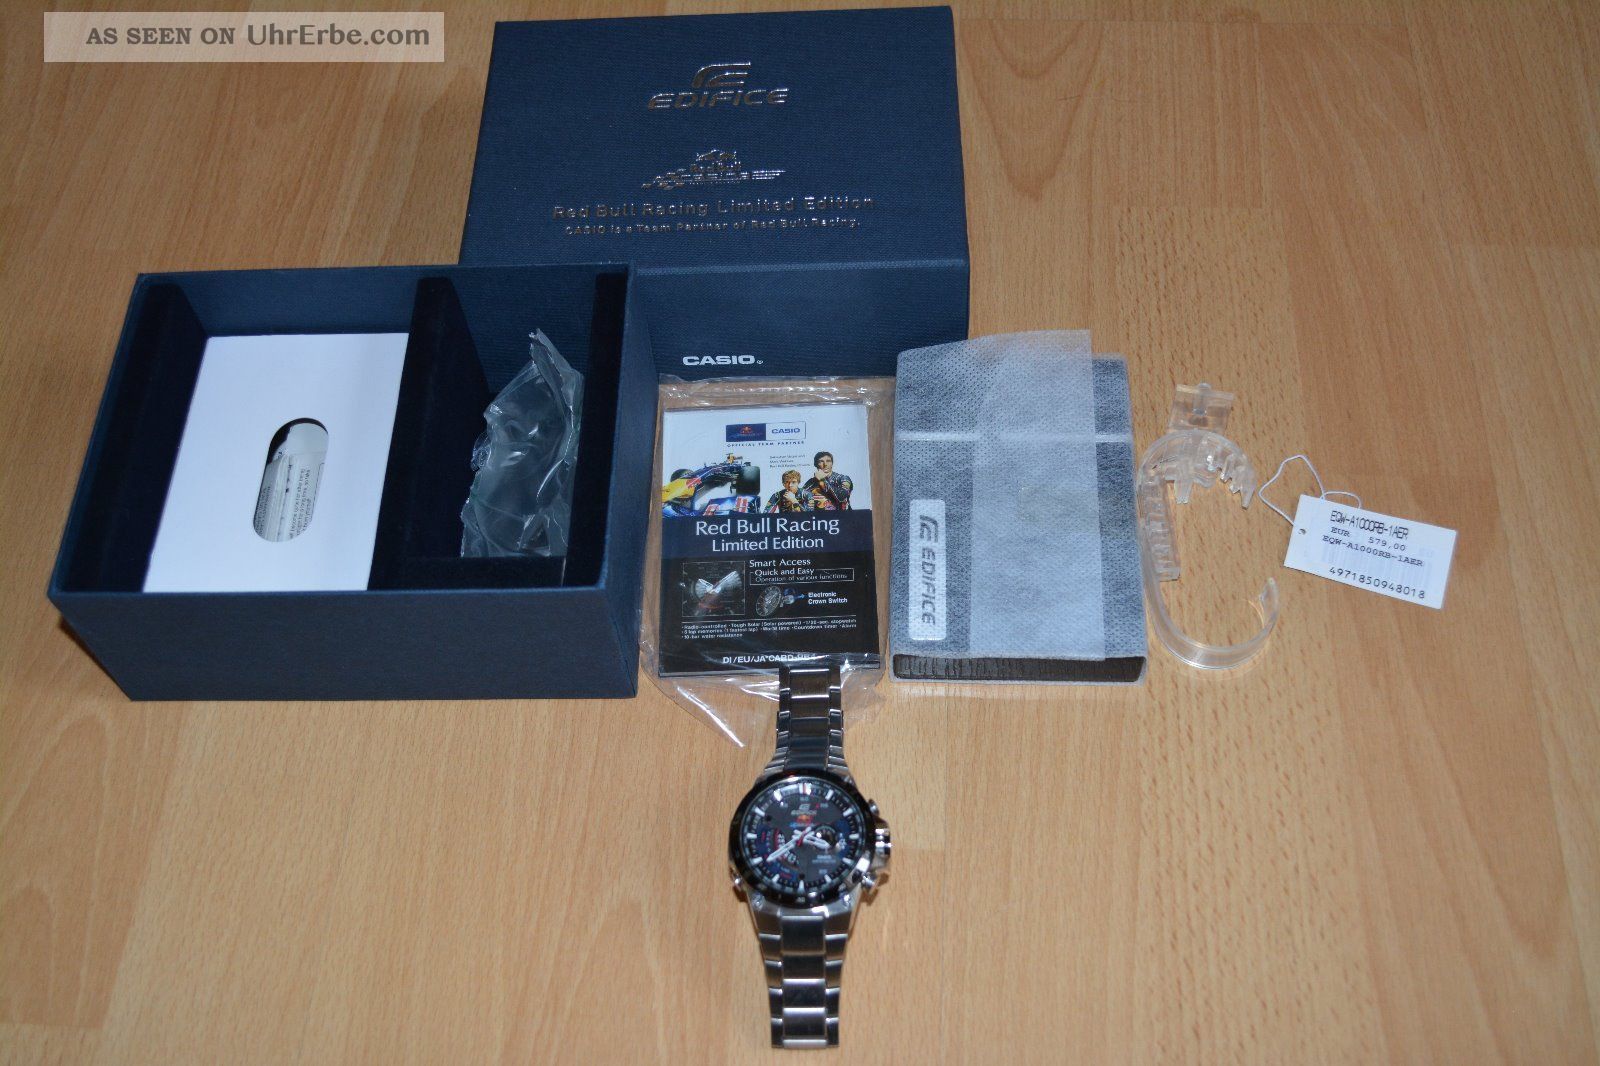 Casio Edifice Red Bull Limited Edition Alarm Chronograph Watch Eqw - A1000rb - 1aer Armbanduhren Bild